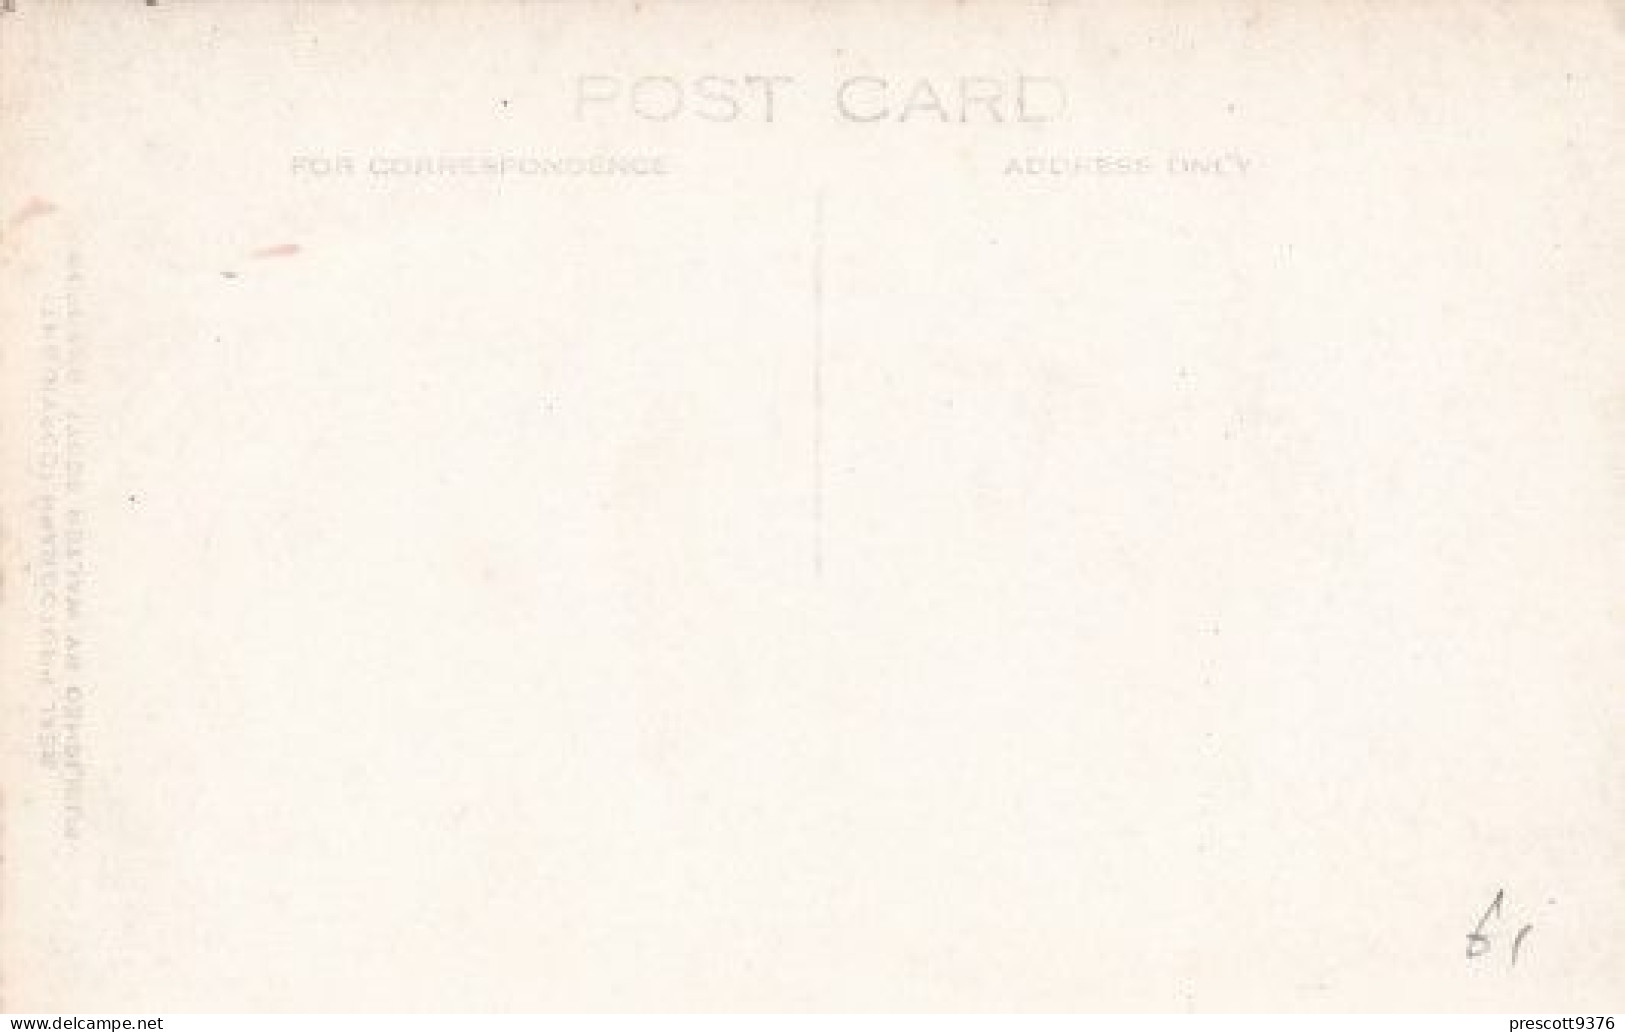 Kings & Clare Colleges - Cambridge - Unused Postcard - Cambridge